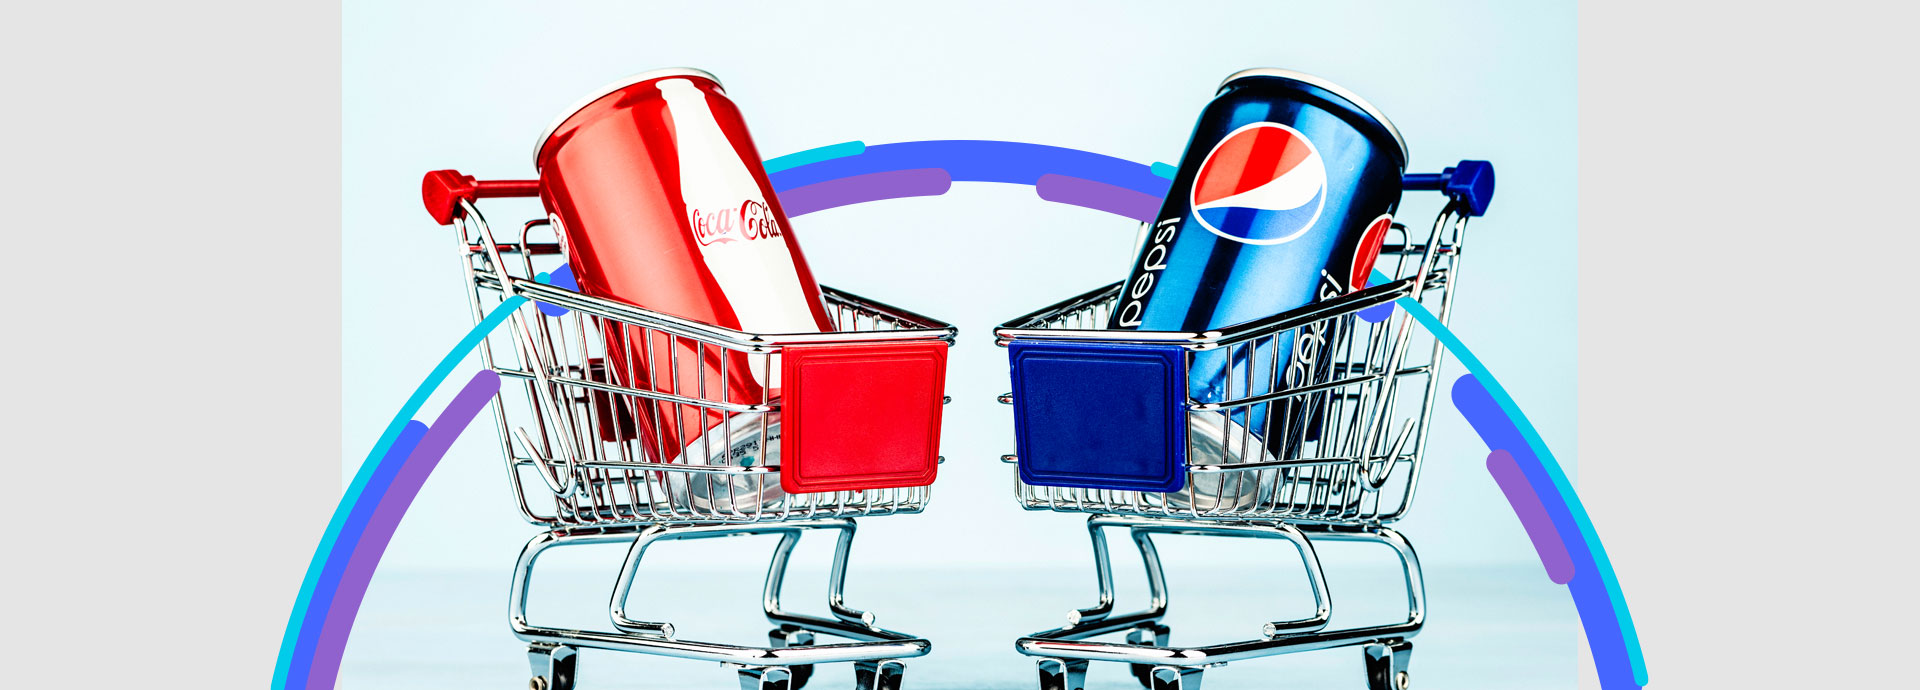 Imagen de la competencia entre una lata de Coca-Cola y una lata de Pepsi.